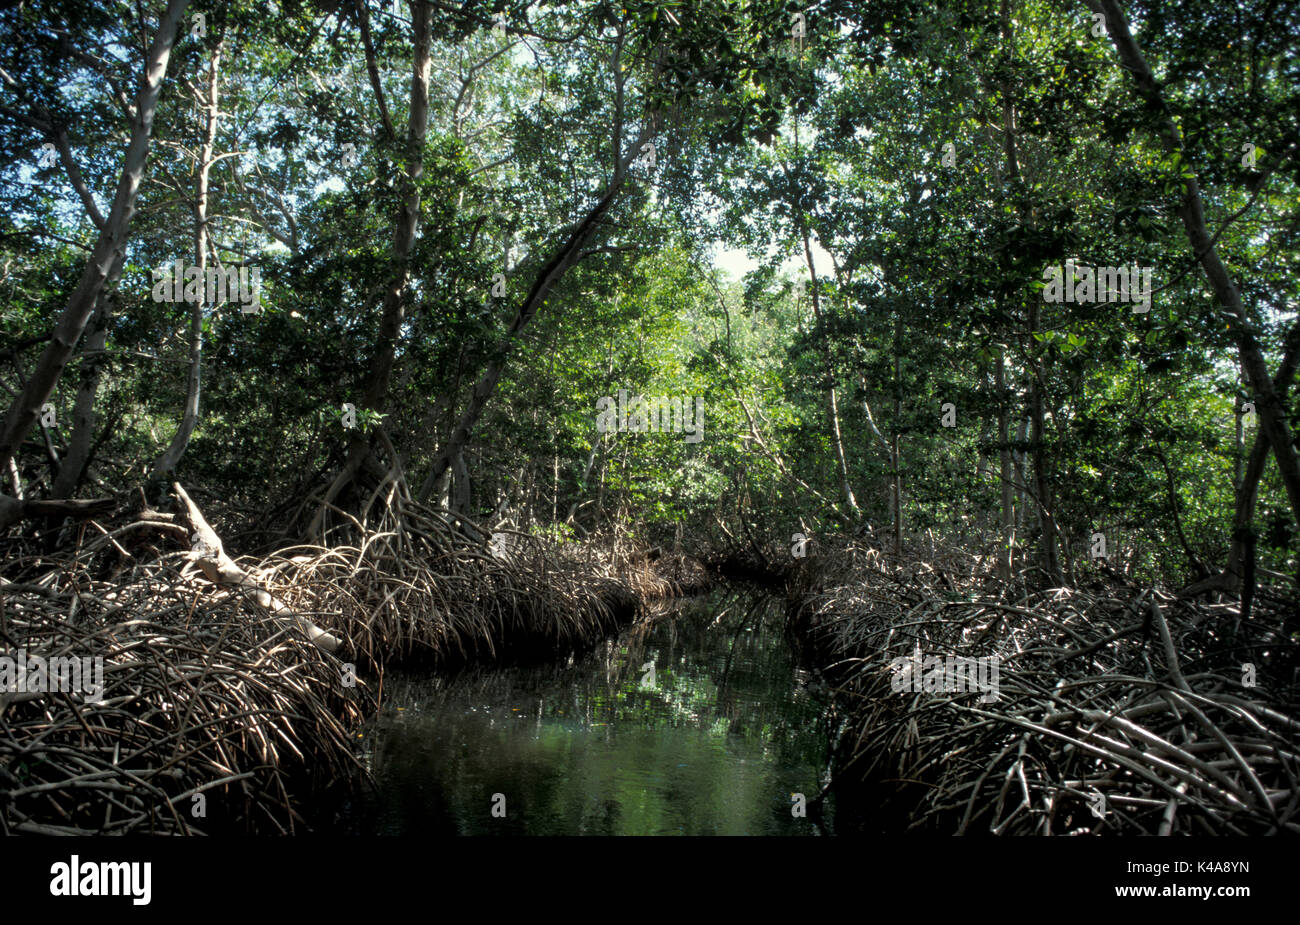 Lagune de mangrove ou un marais, l'île de Margarita, Venezuela, montrant les racines dans l'eau, arbres et arbustes qui poussent dans des habitats côtiers saline dans les tropiques Banque D'Images